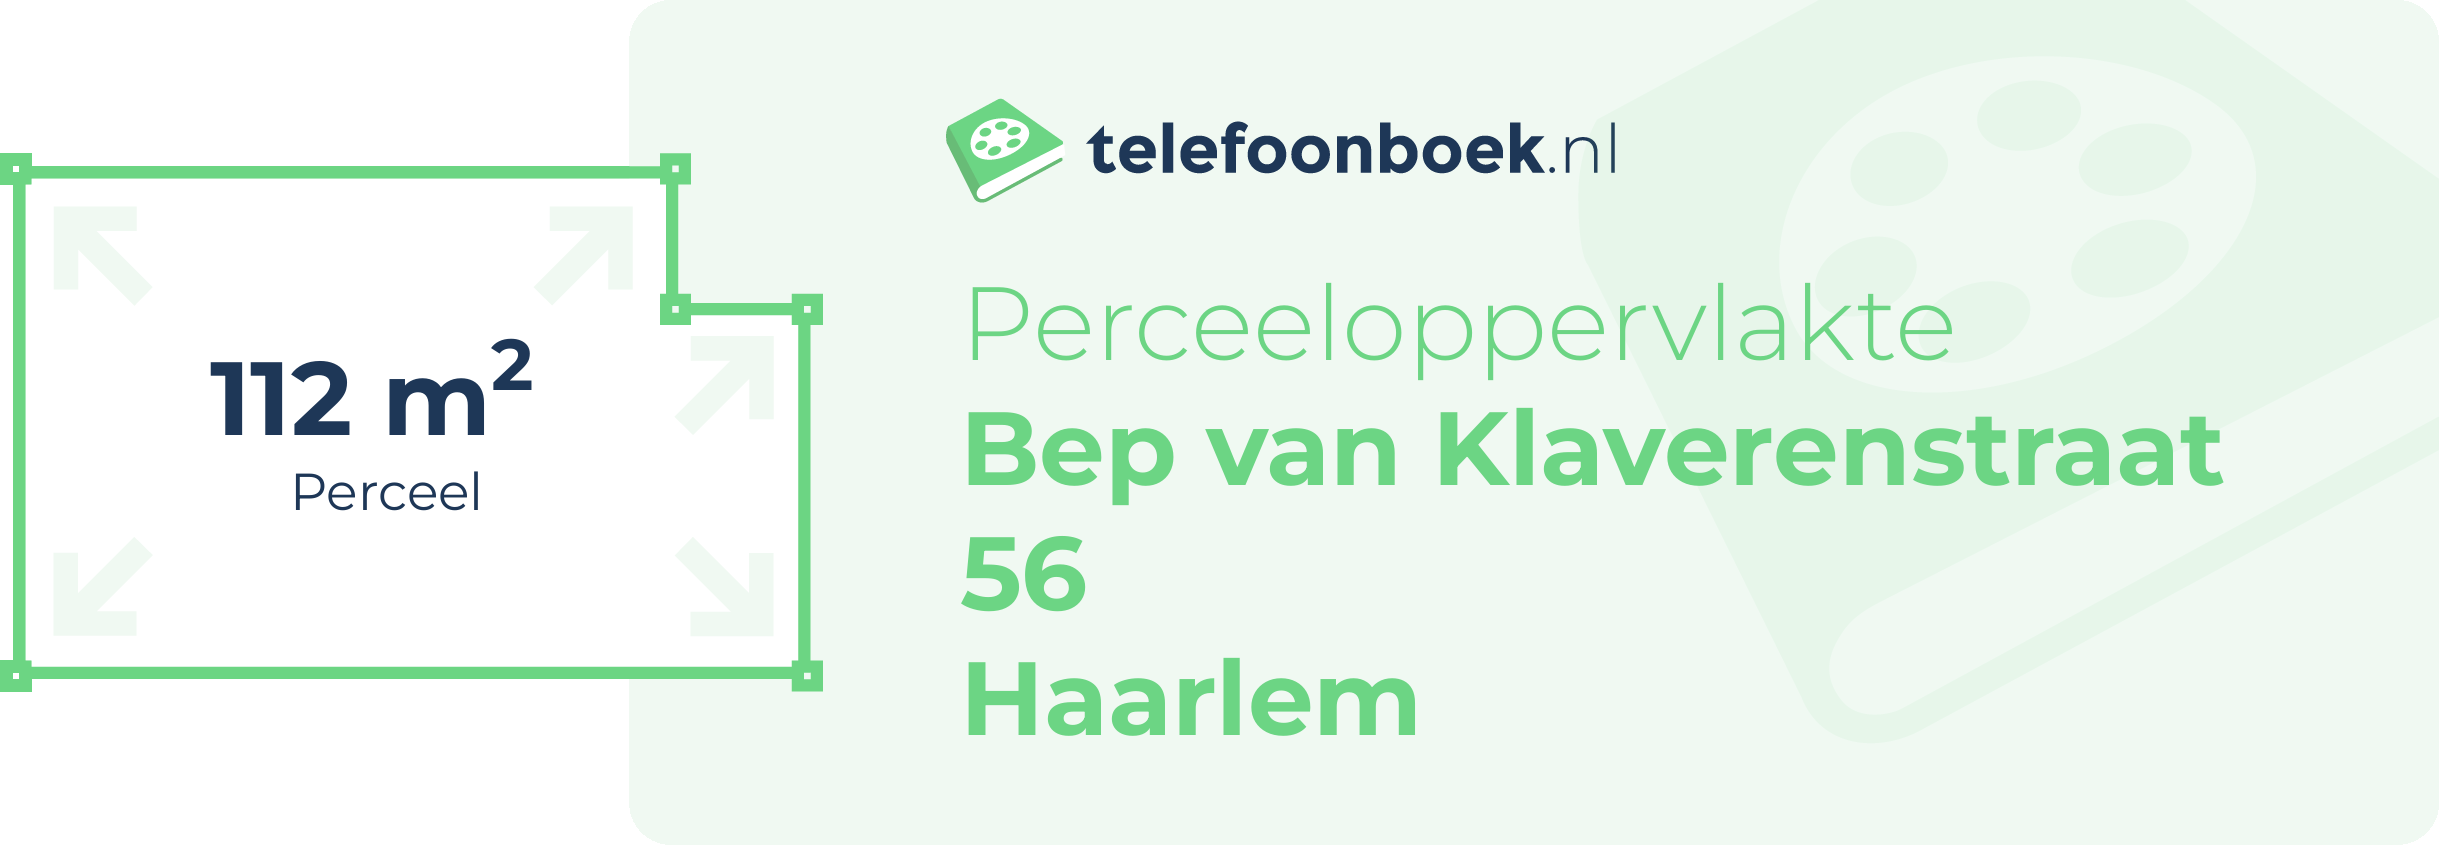 Perceeloppervlakte Bep Van Klaverenstraat 56 Haarlem